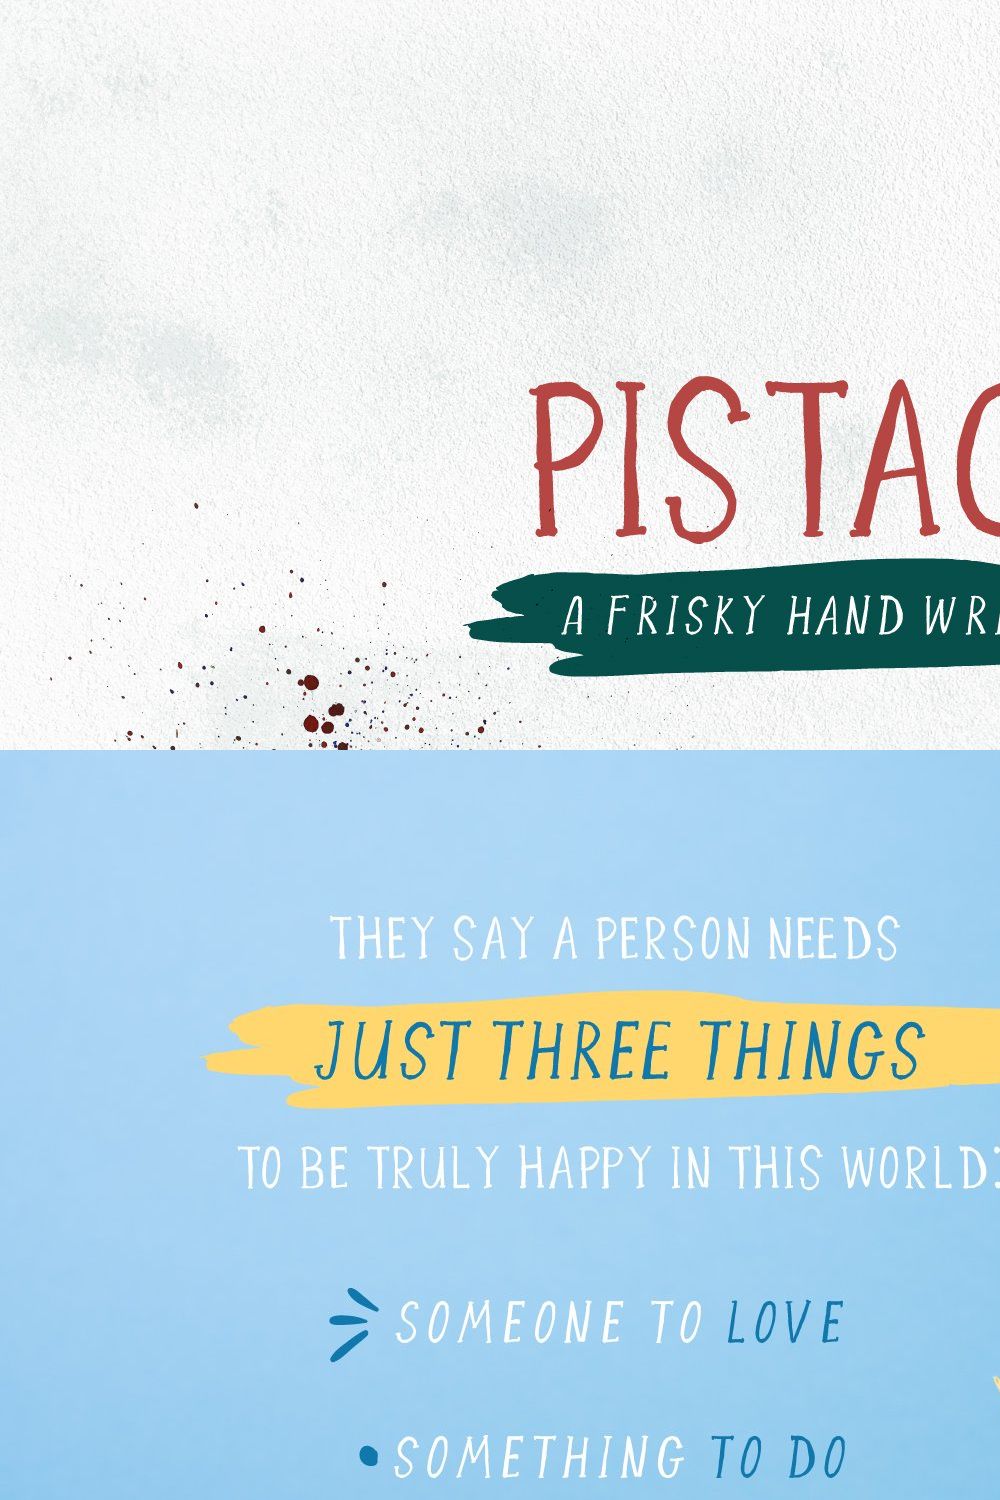 Pistachio - Frisky Handletterd Font pinterest preview image.